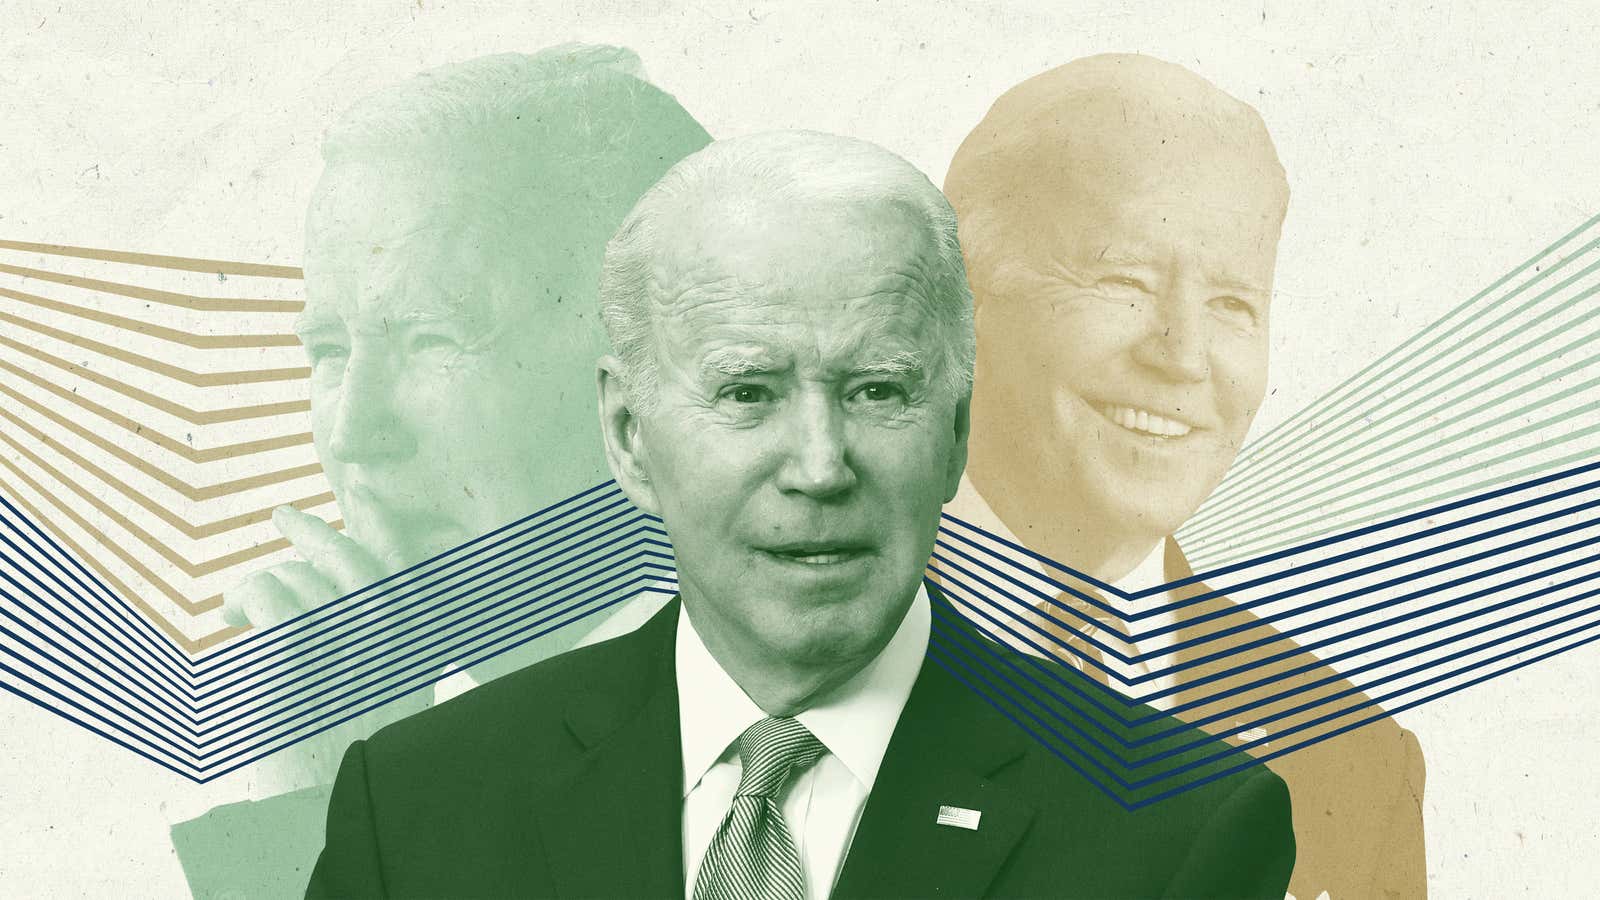 Should Biden Run Again?